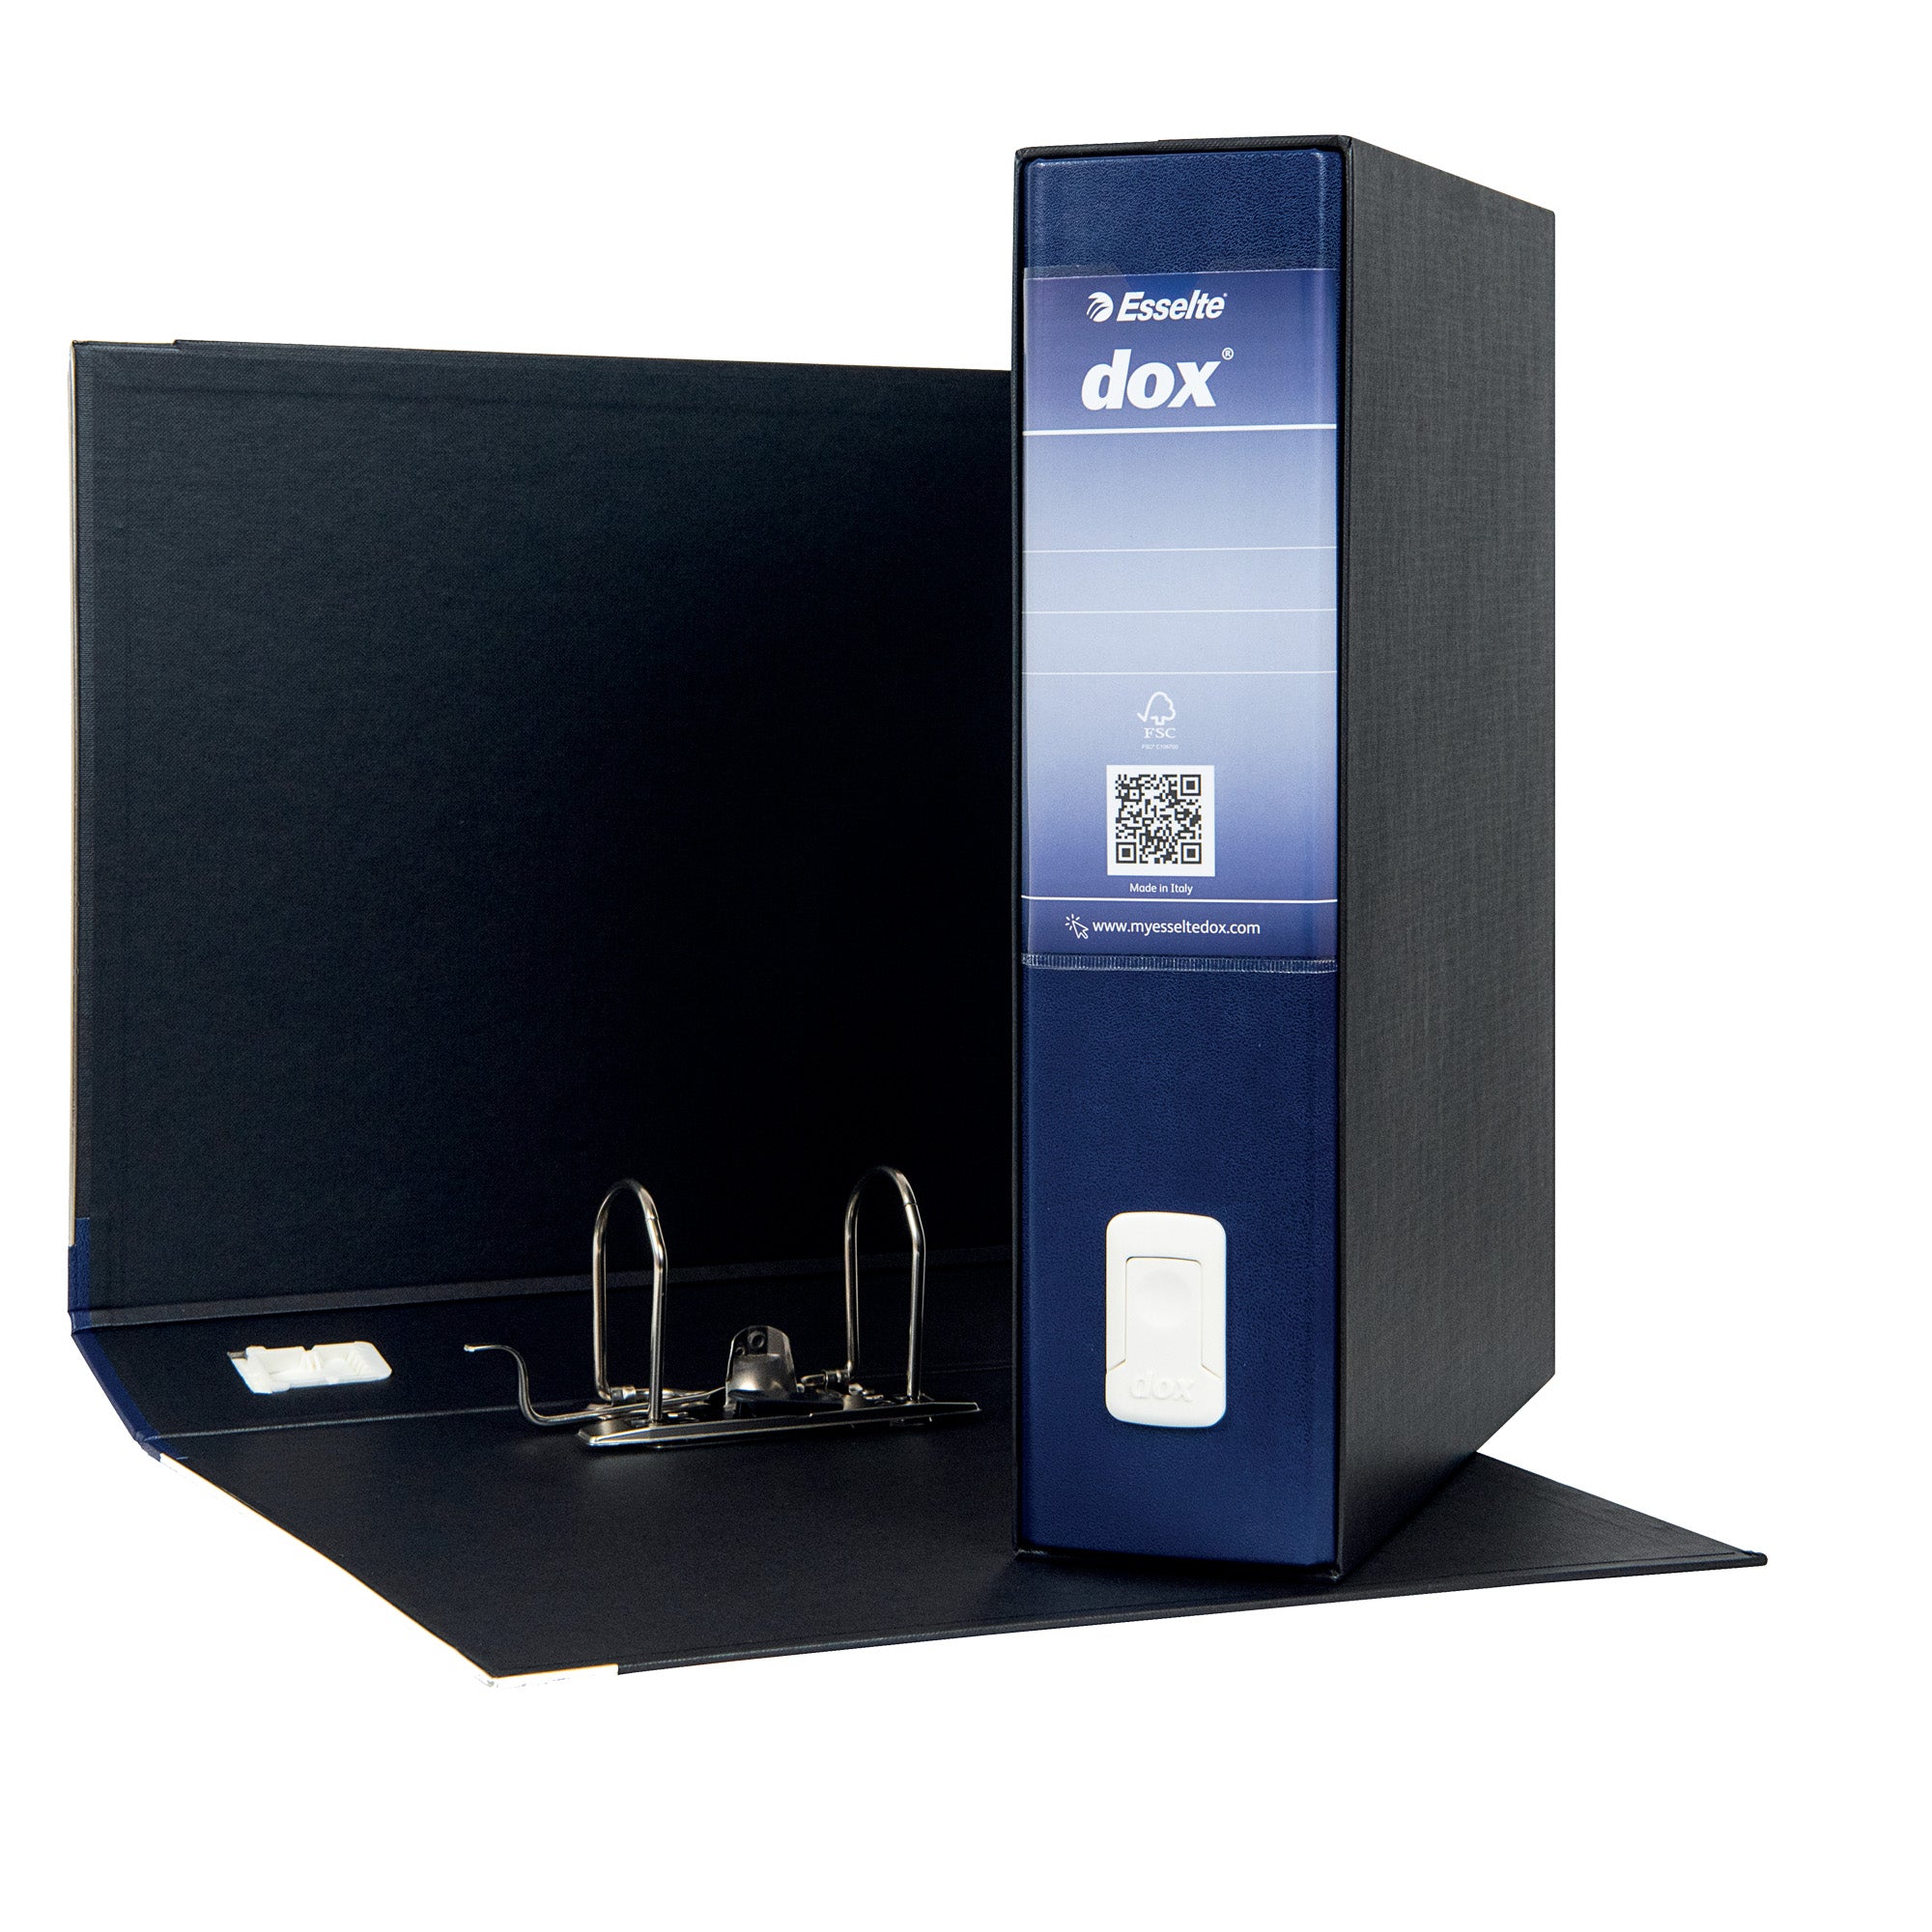 dox-registratore-2-blu-dorso-8cm-f-to-protocollo-esselte